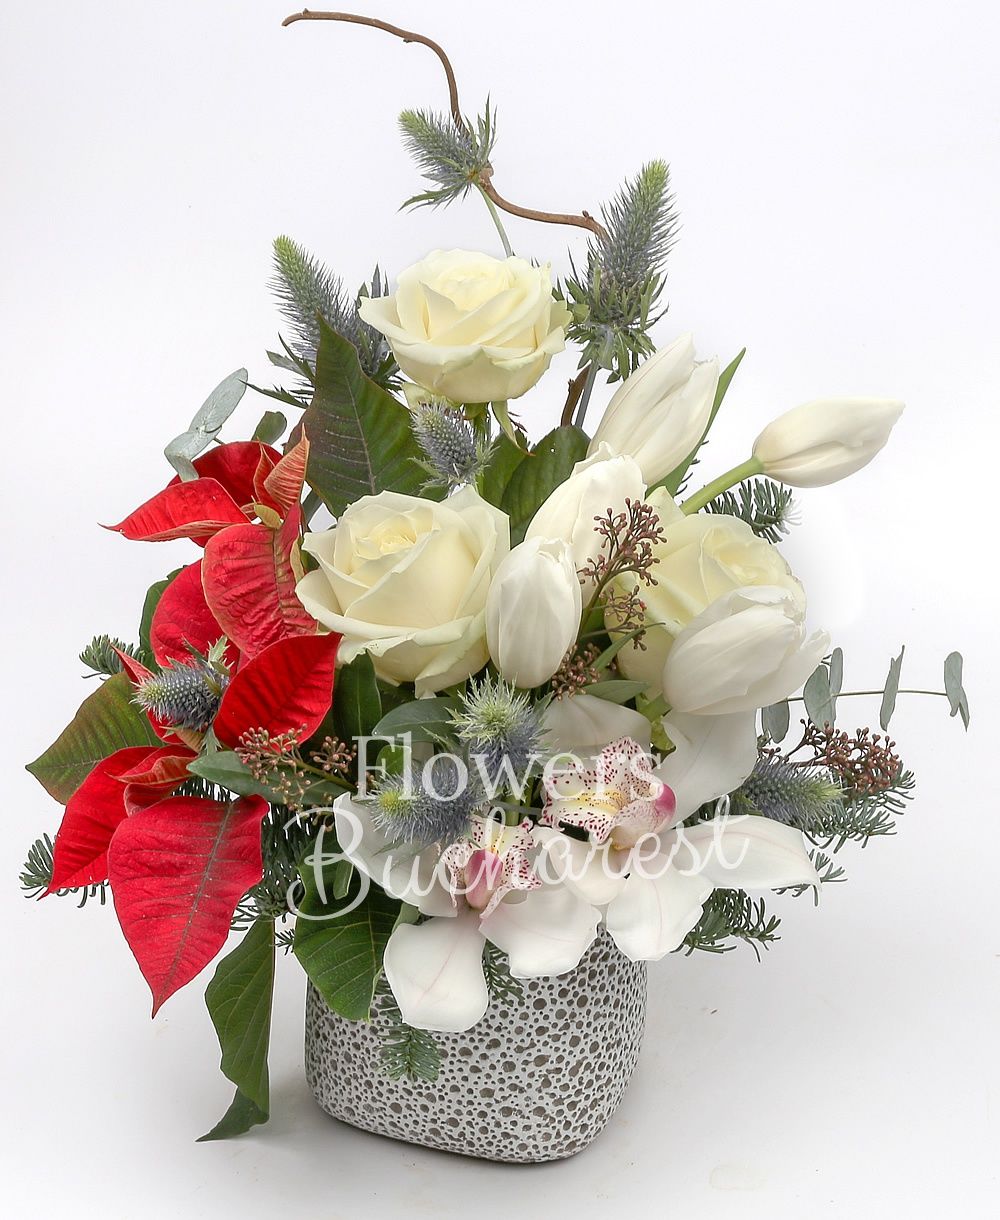 3 white roses, 5 white tulips, 1 white cymbidium, poinsettia, eryngium, corylus, fir, greenery, vase